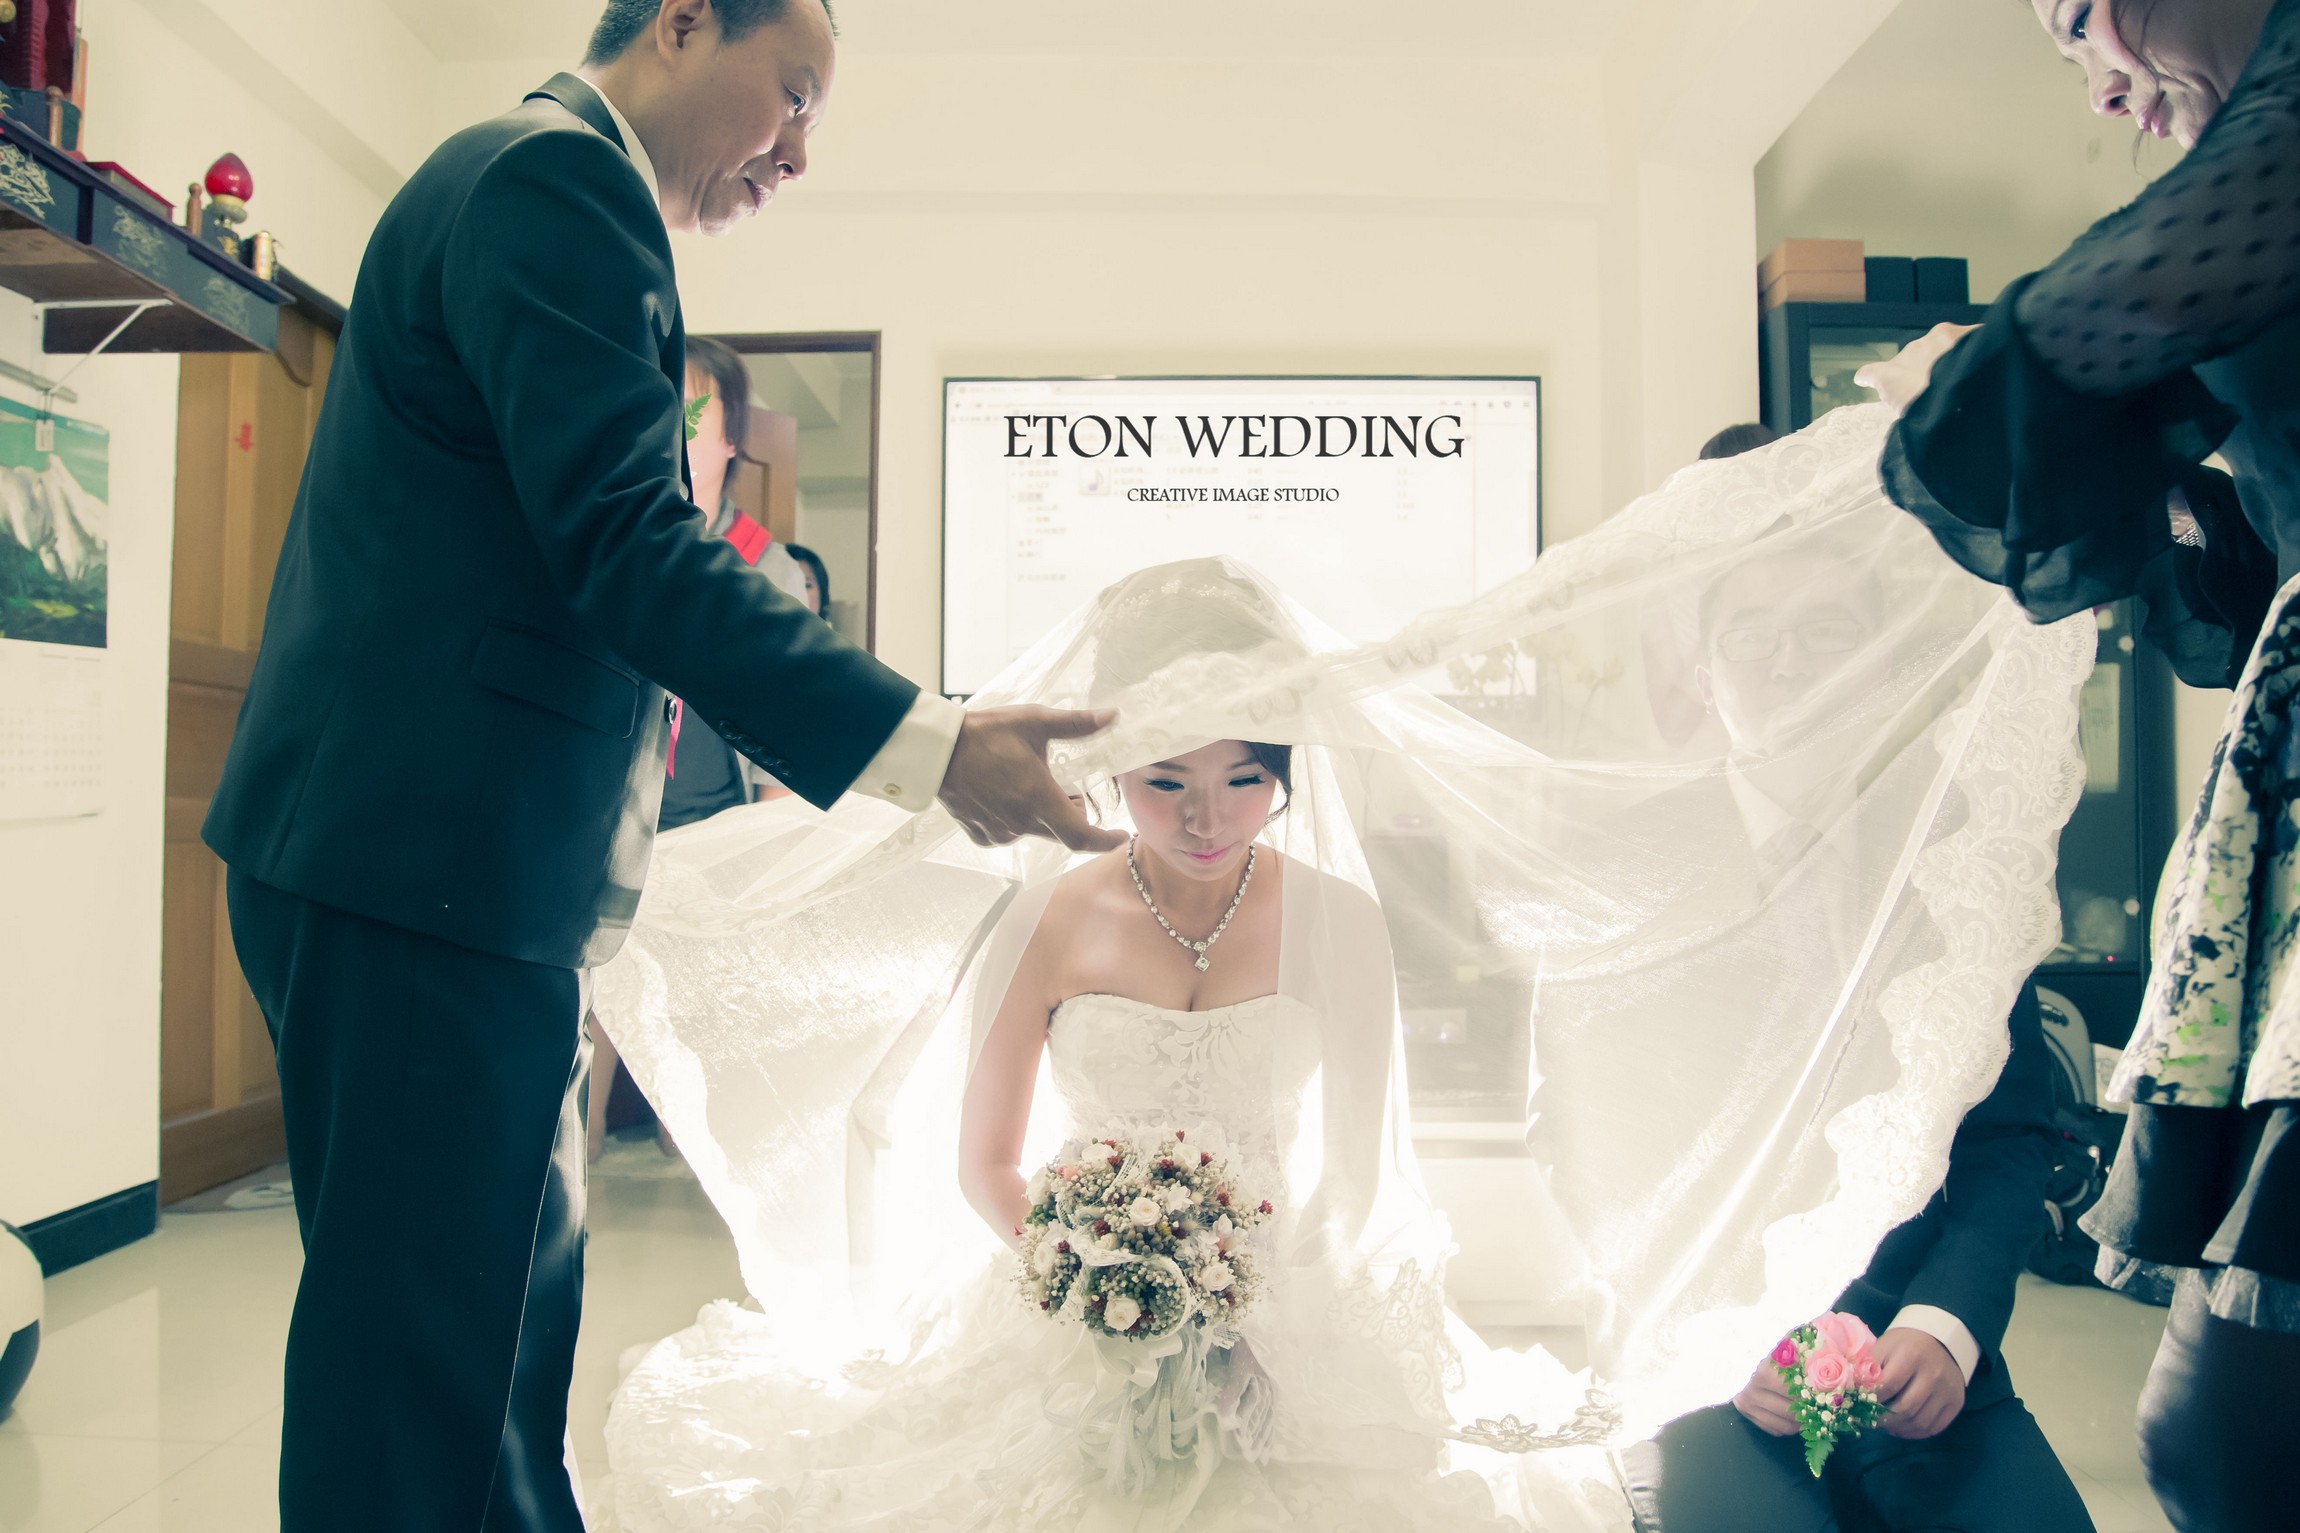 婚禮錄影 新竹,新竹 婚錄推薦,新竹 婚錄價格,新竹 拍婚禮錄影